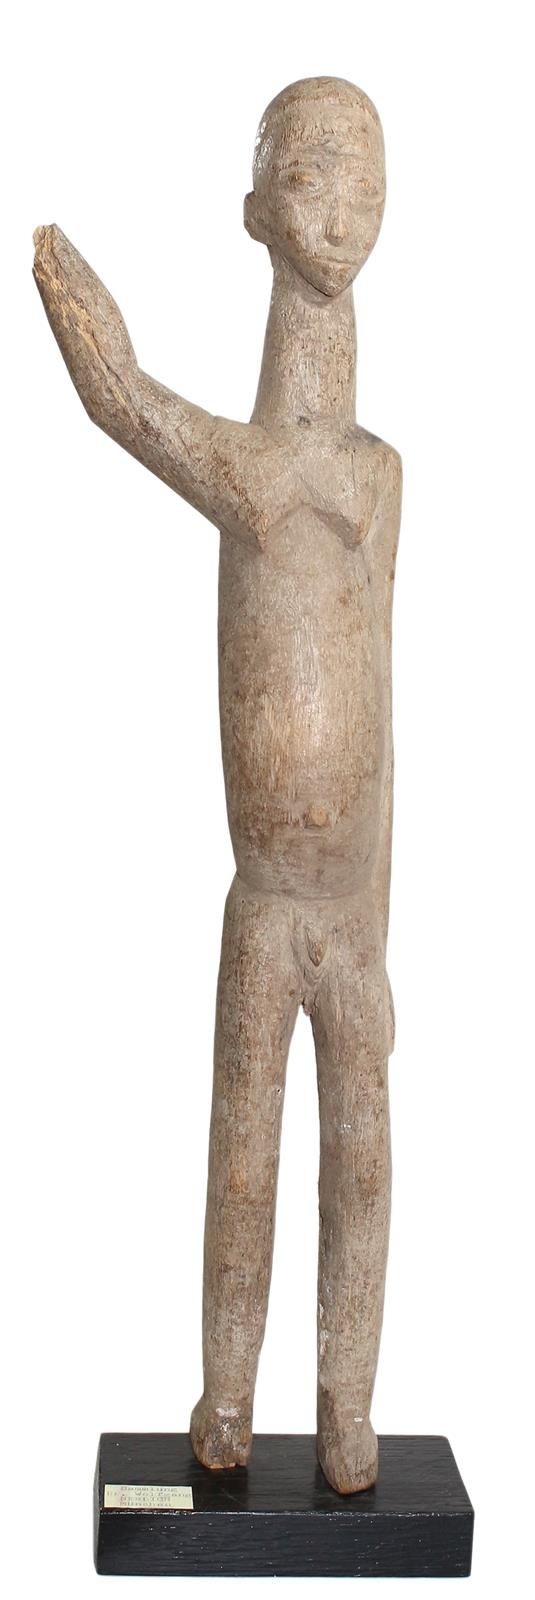 Ahnenfigur der Lobi 布基纳法索。男性祭祀人物。稀疏的雕刻。1只手臂抬起，另一只手臂靠着身体。 抬起的手臂和脚留下了缺失的部分。高：50厘米。&hellip;